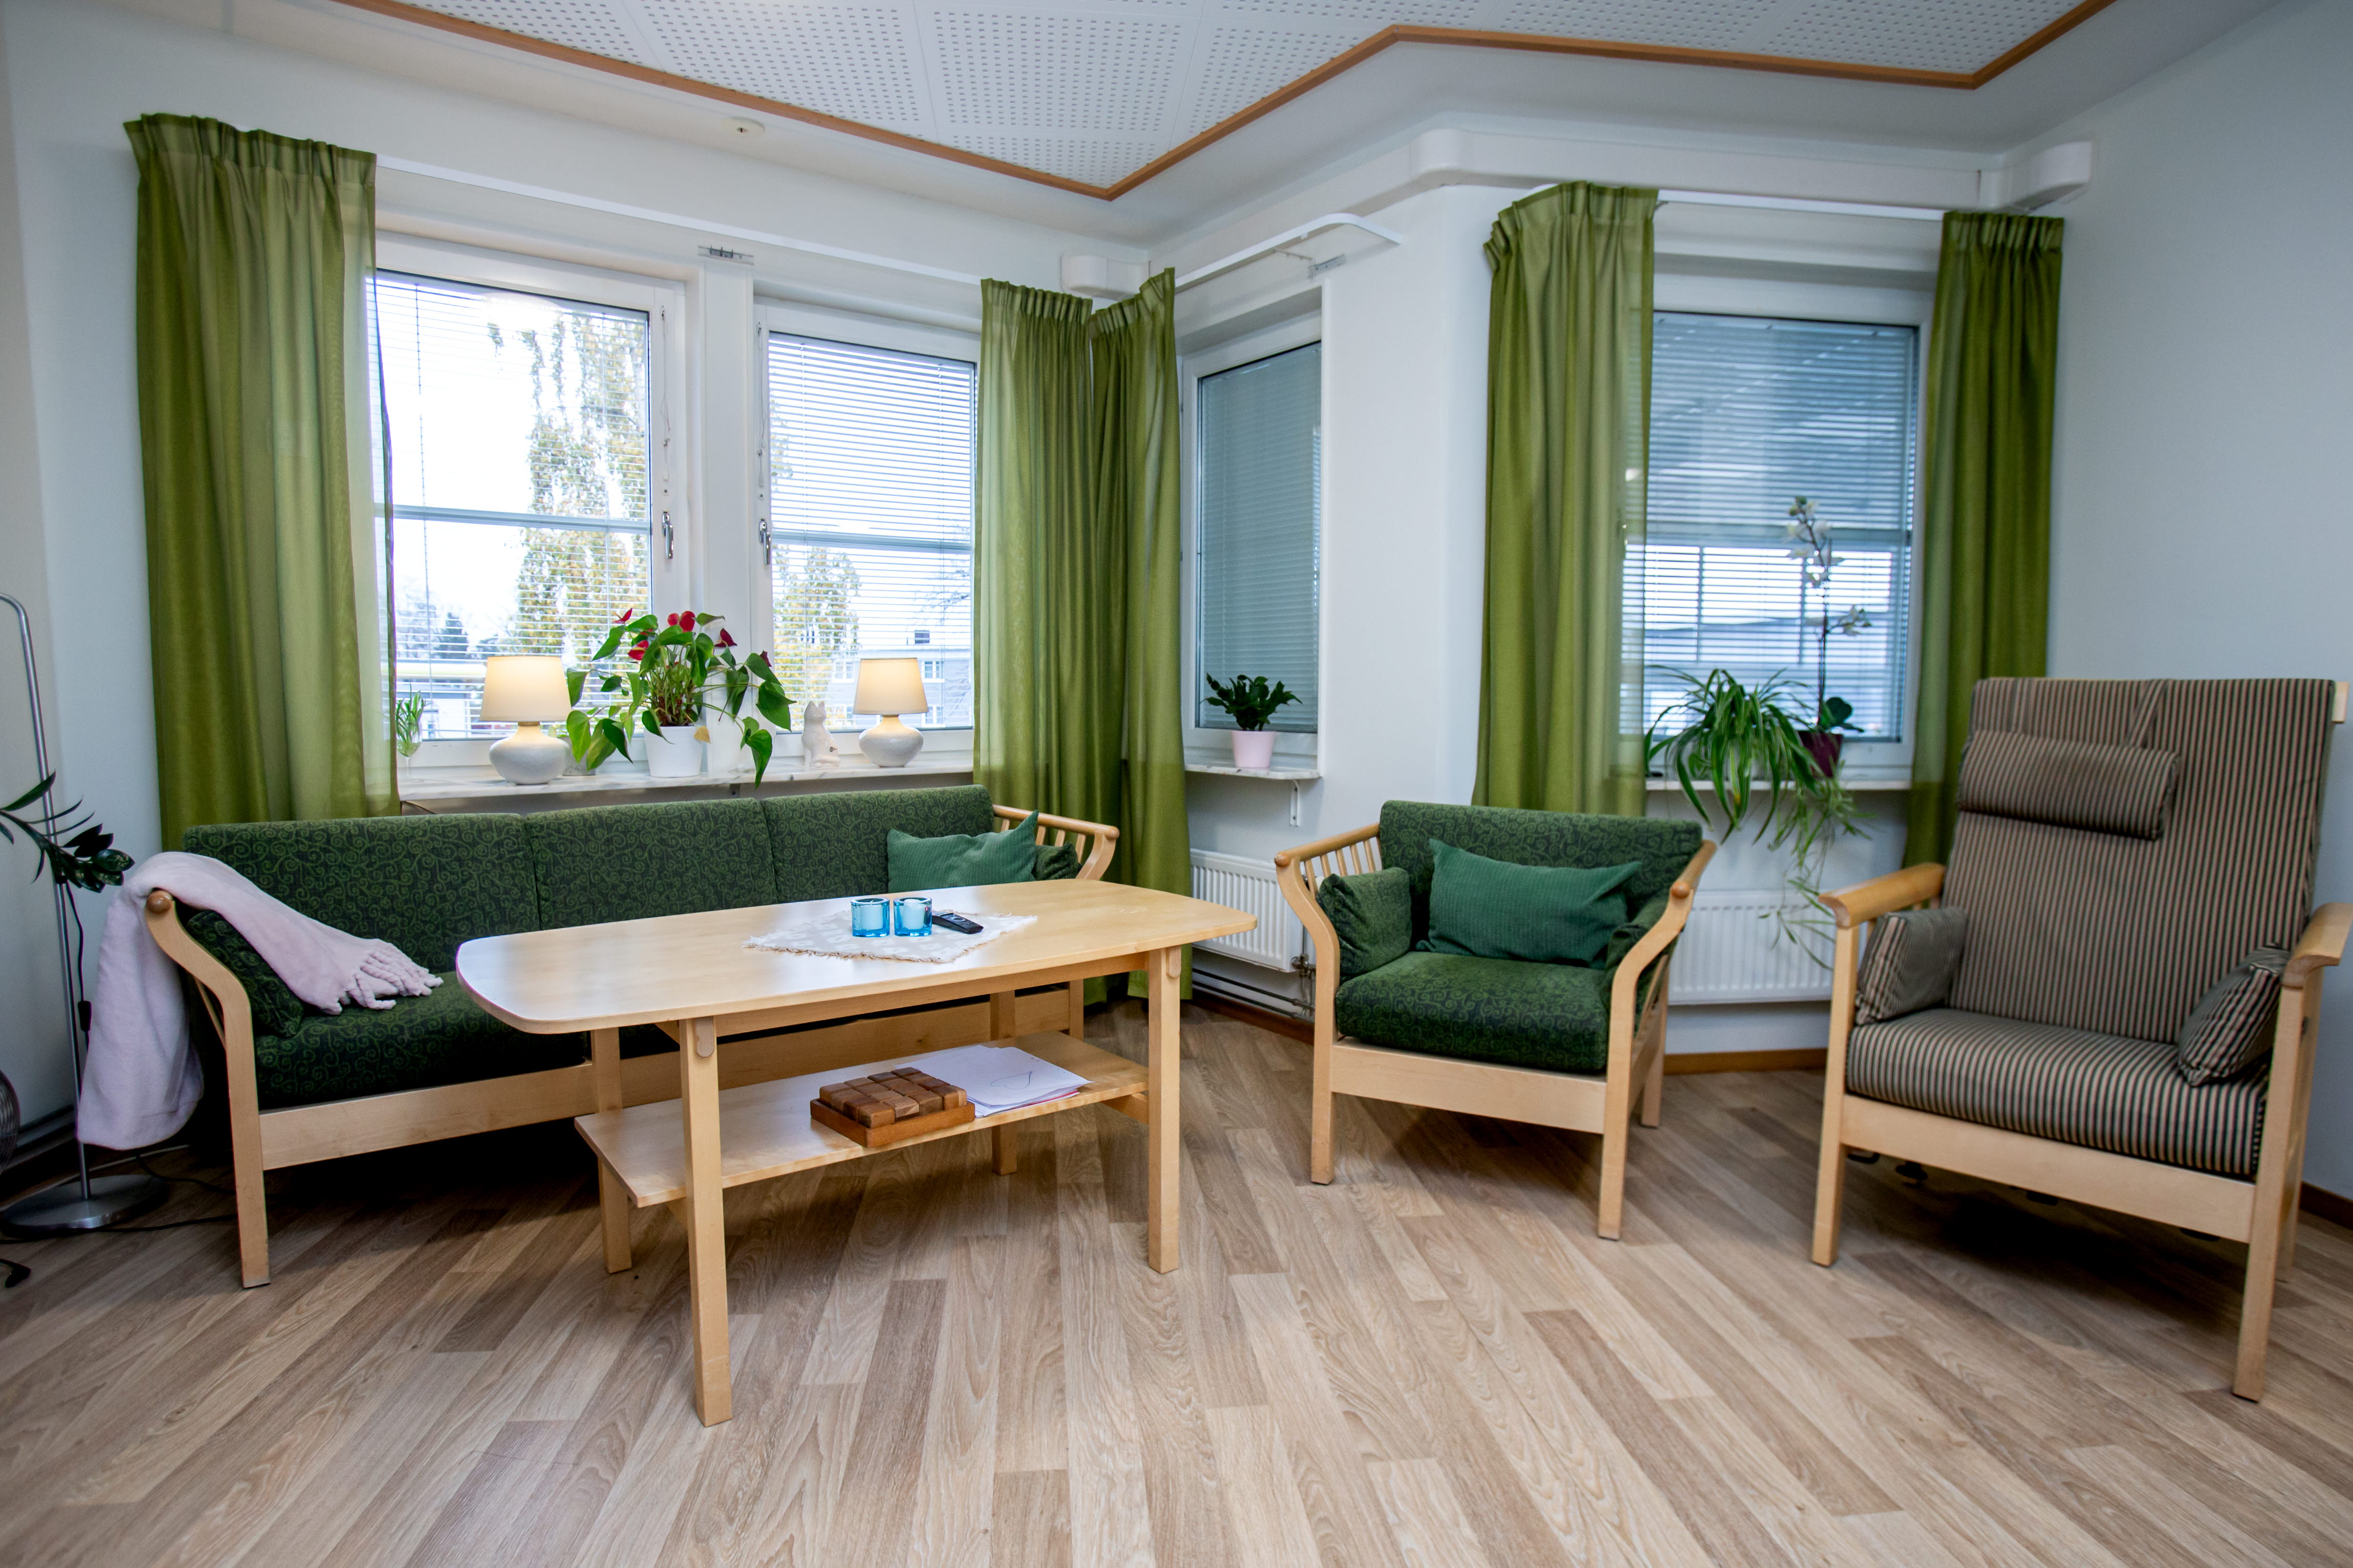 Gemensam social yta med två fåtöljer en soffa och ett bord. Möblerna är klädda i gröna och bruna toner